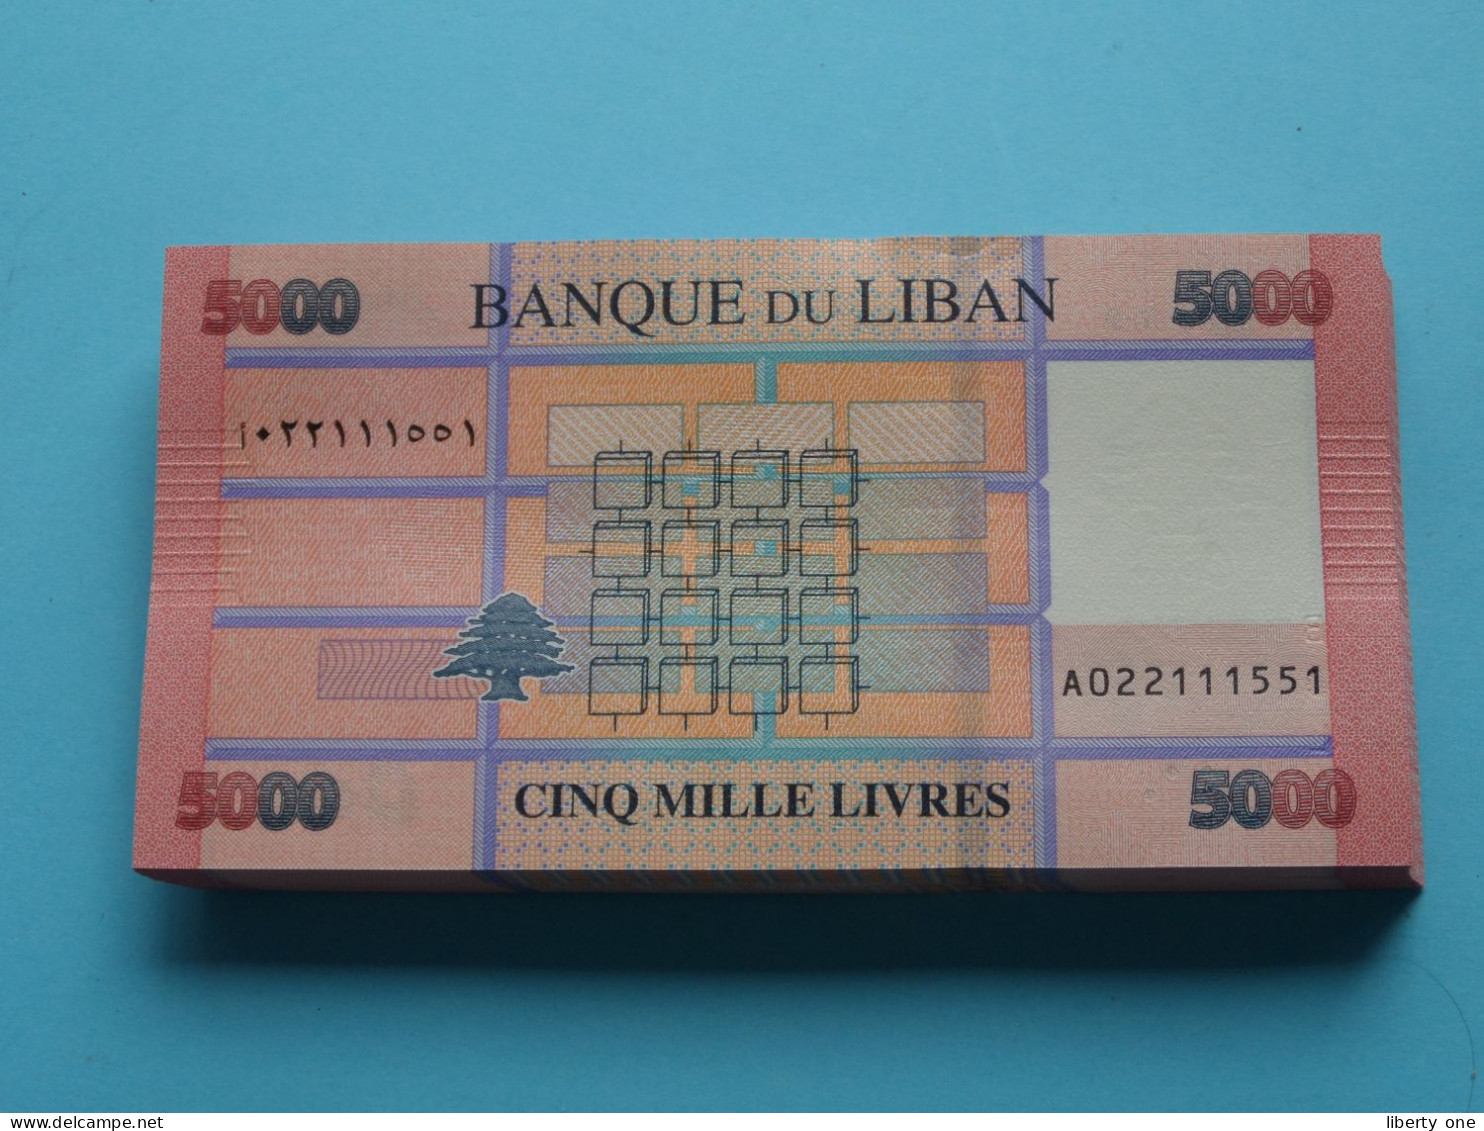 5000 Cinq Mille Livres ( Banque Du Liban ) Lebanon 2021 ( For Grade, Please See SCANS ) UNC ! - Lebanon